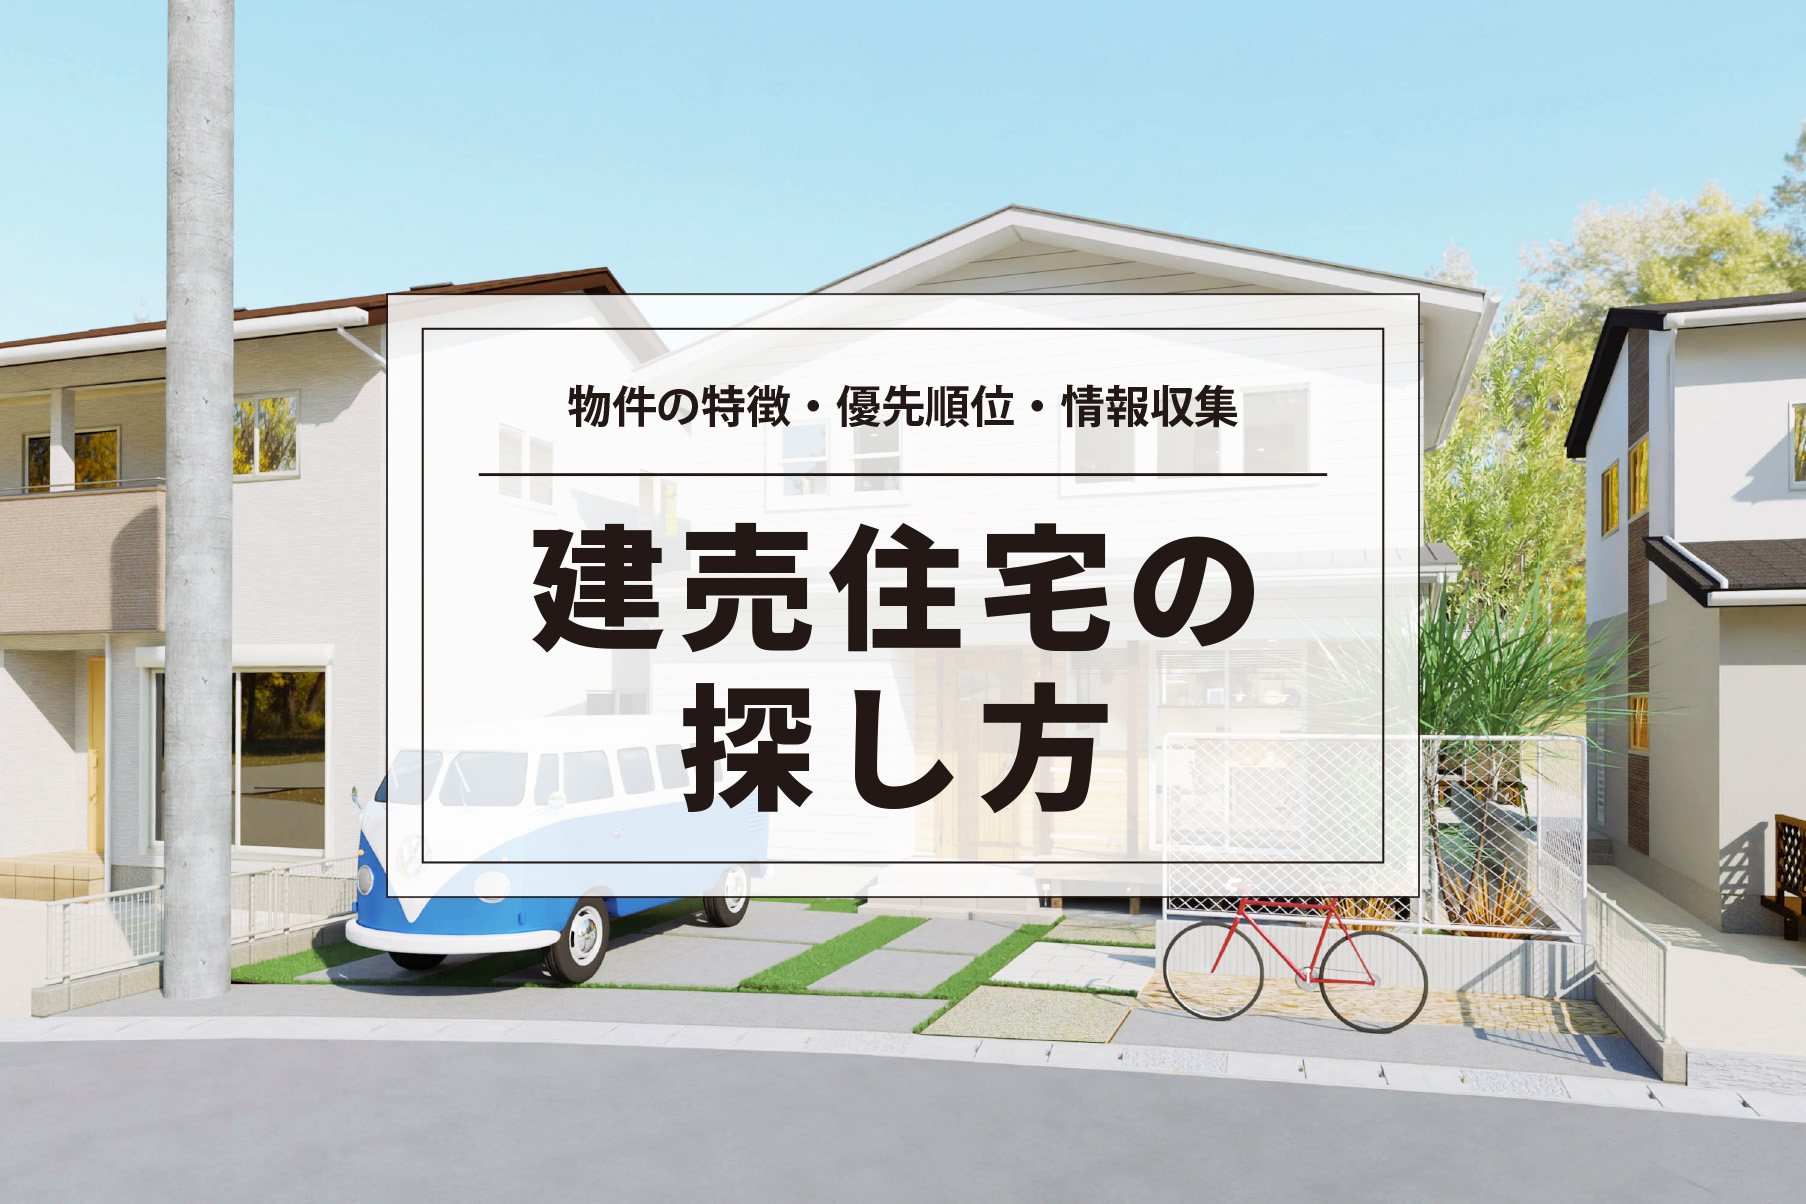 建売住宅の探し方 ベストなマイホームを見つけるためのポイント 熊本の新築一戸建て 建売 分譲地ならアネシス 公式